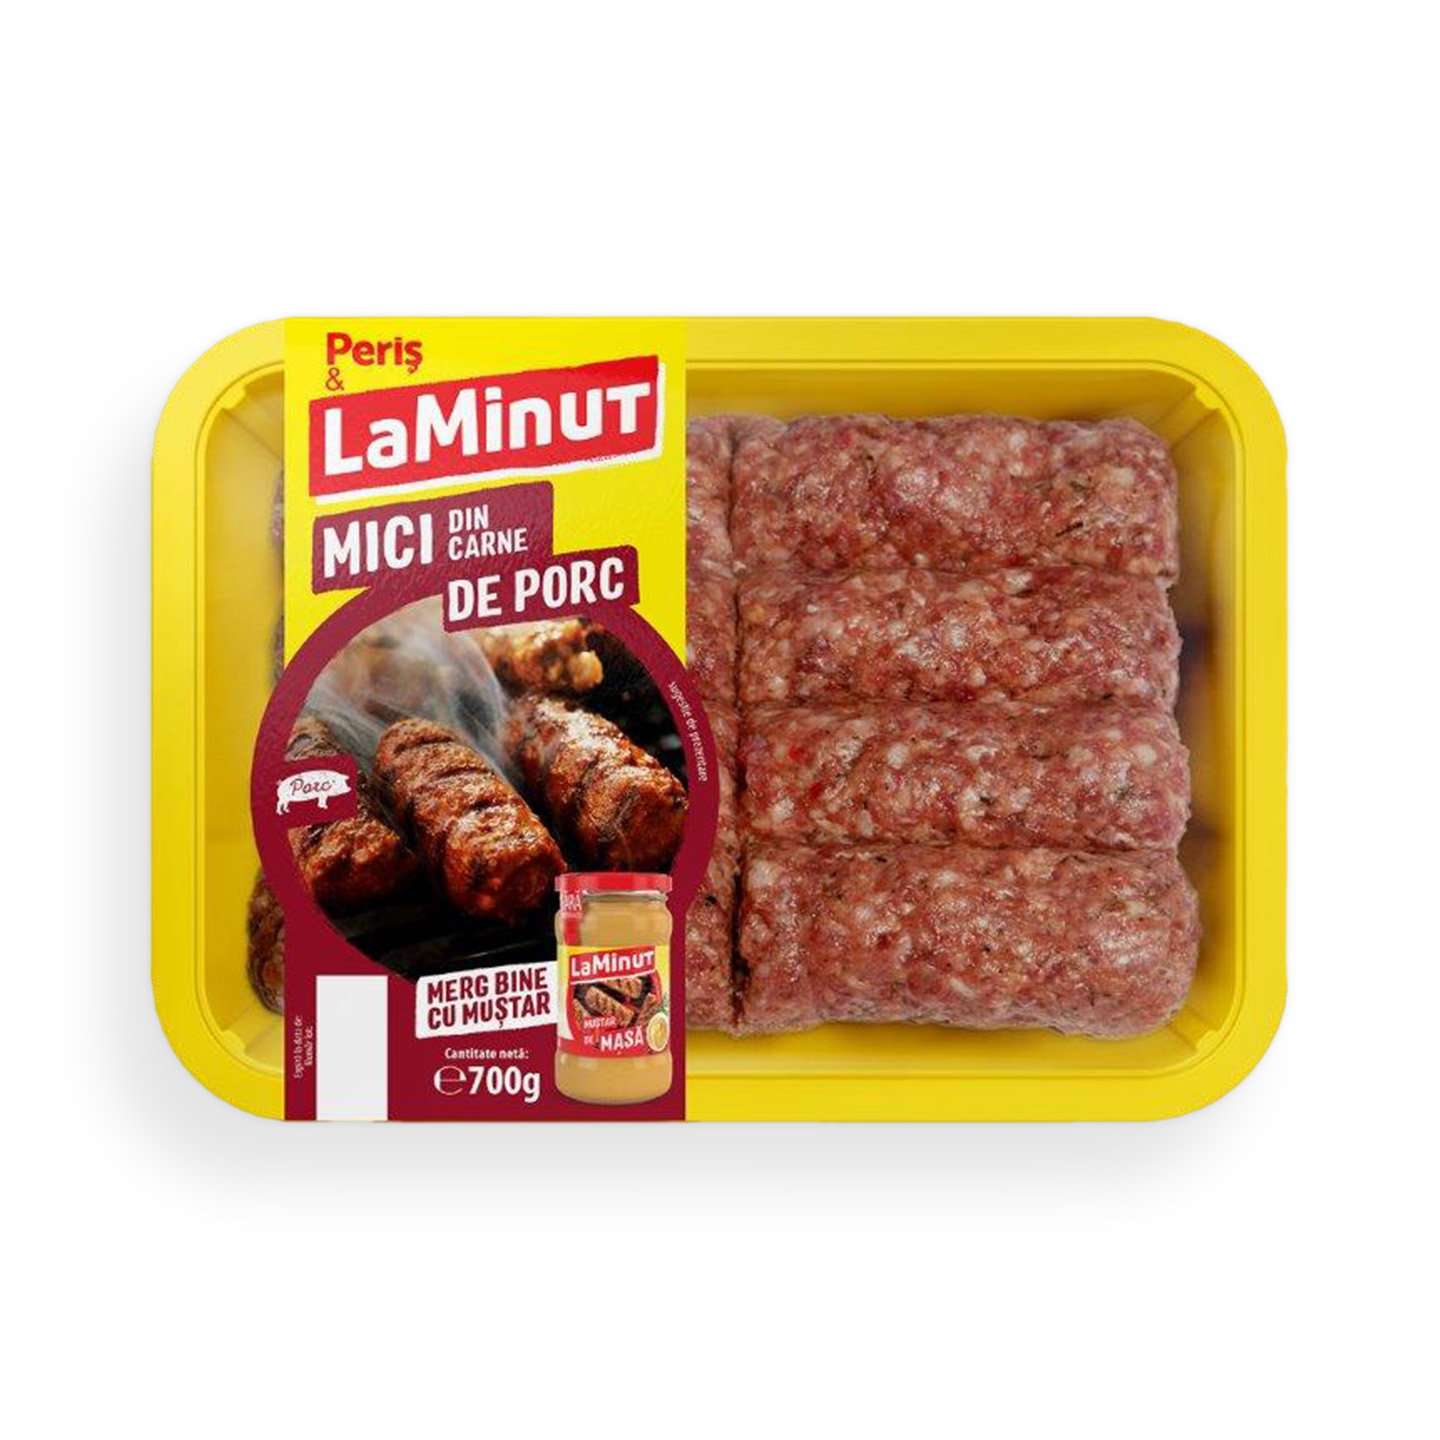 Mici din carne de porc Periș & LaMinut 700g